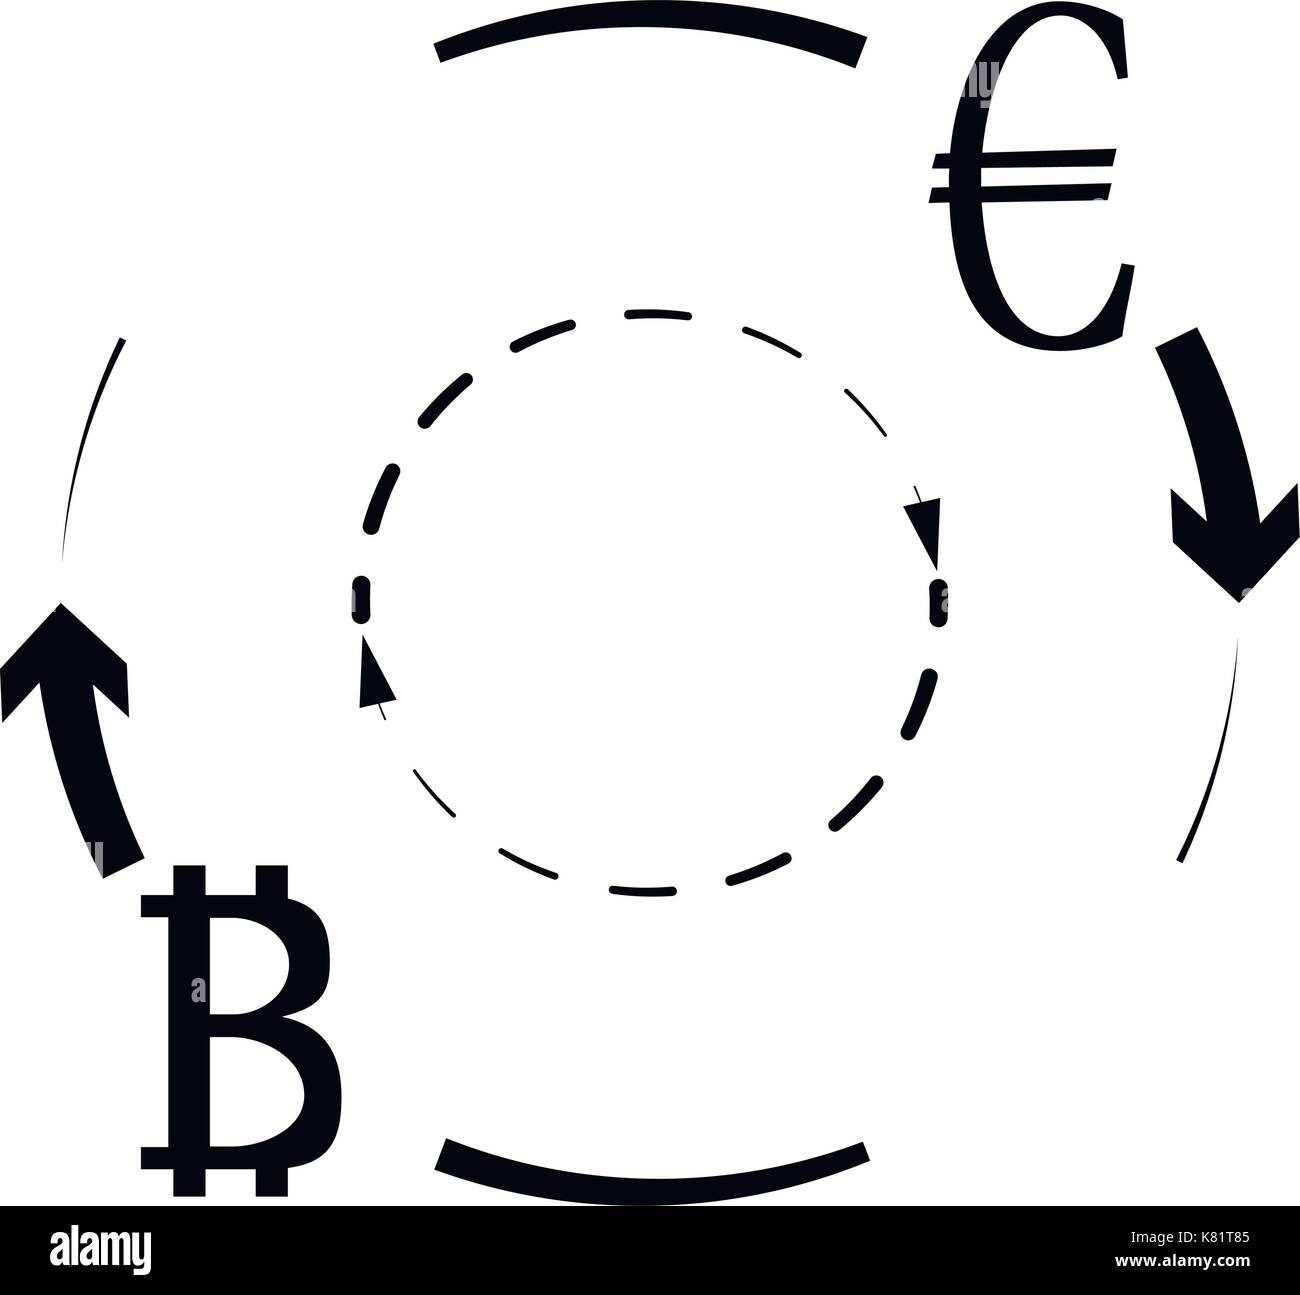 Convertire in euro il simbolo bitcoin. crypto moneta di scambio, vettore btc trasferimento a eur. illustrazione vettoriale Illustrazione Vettoriale